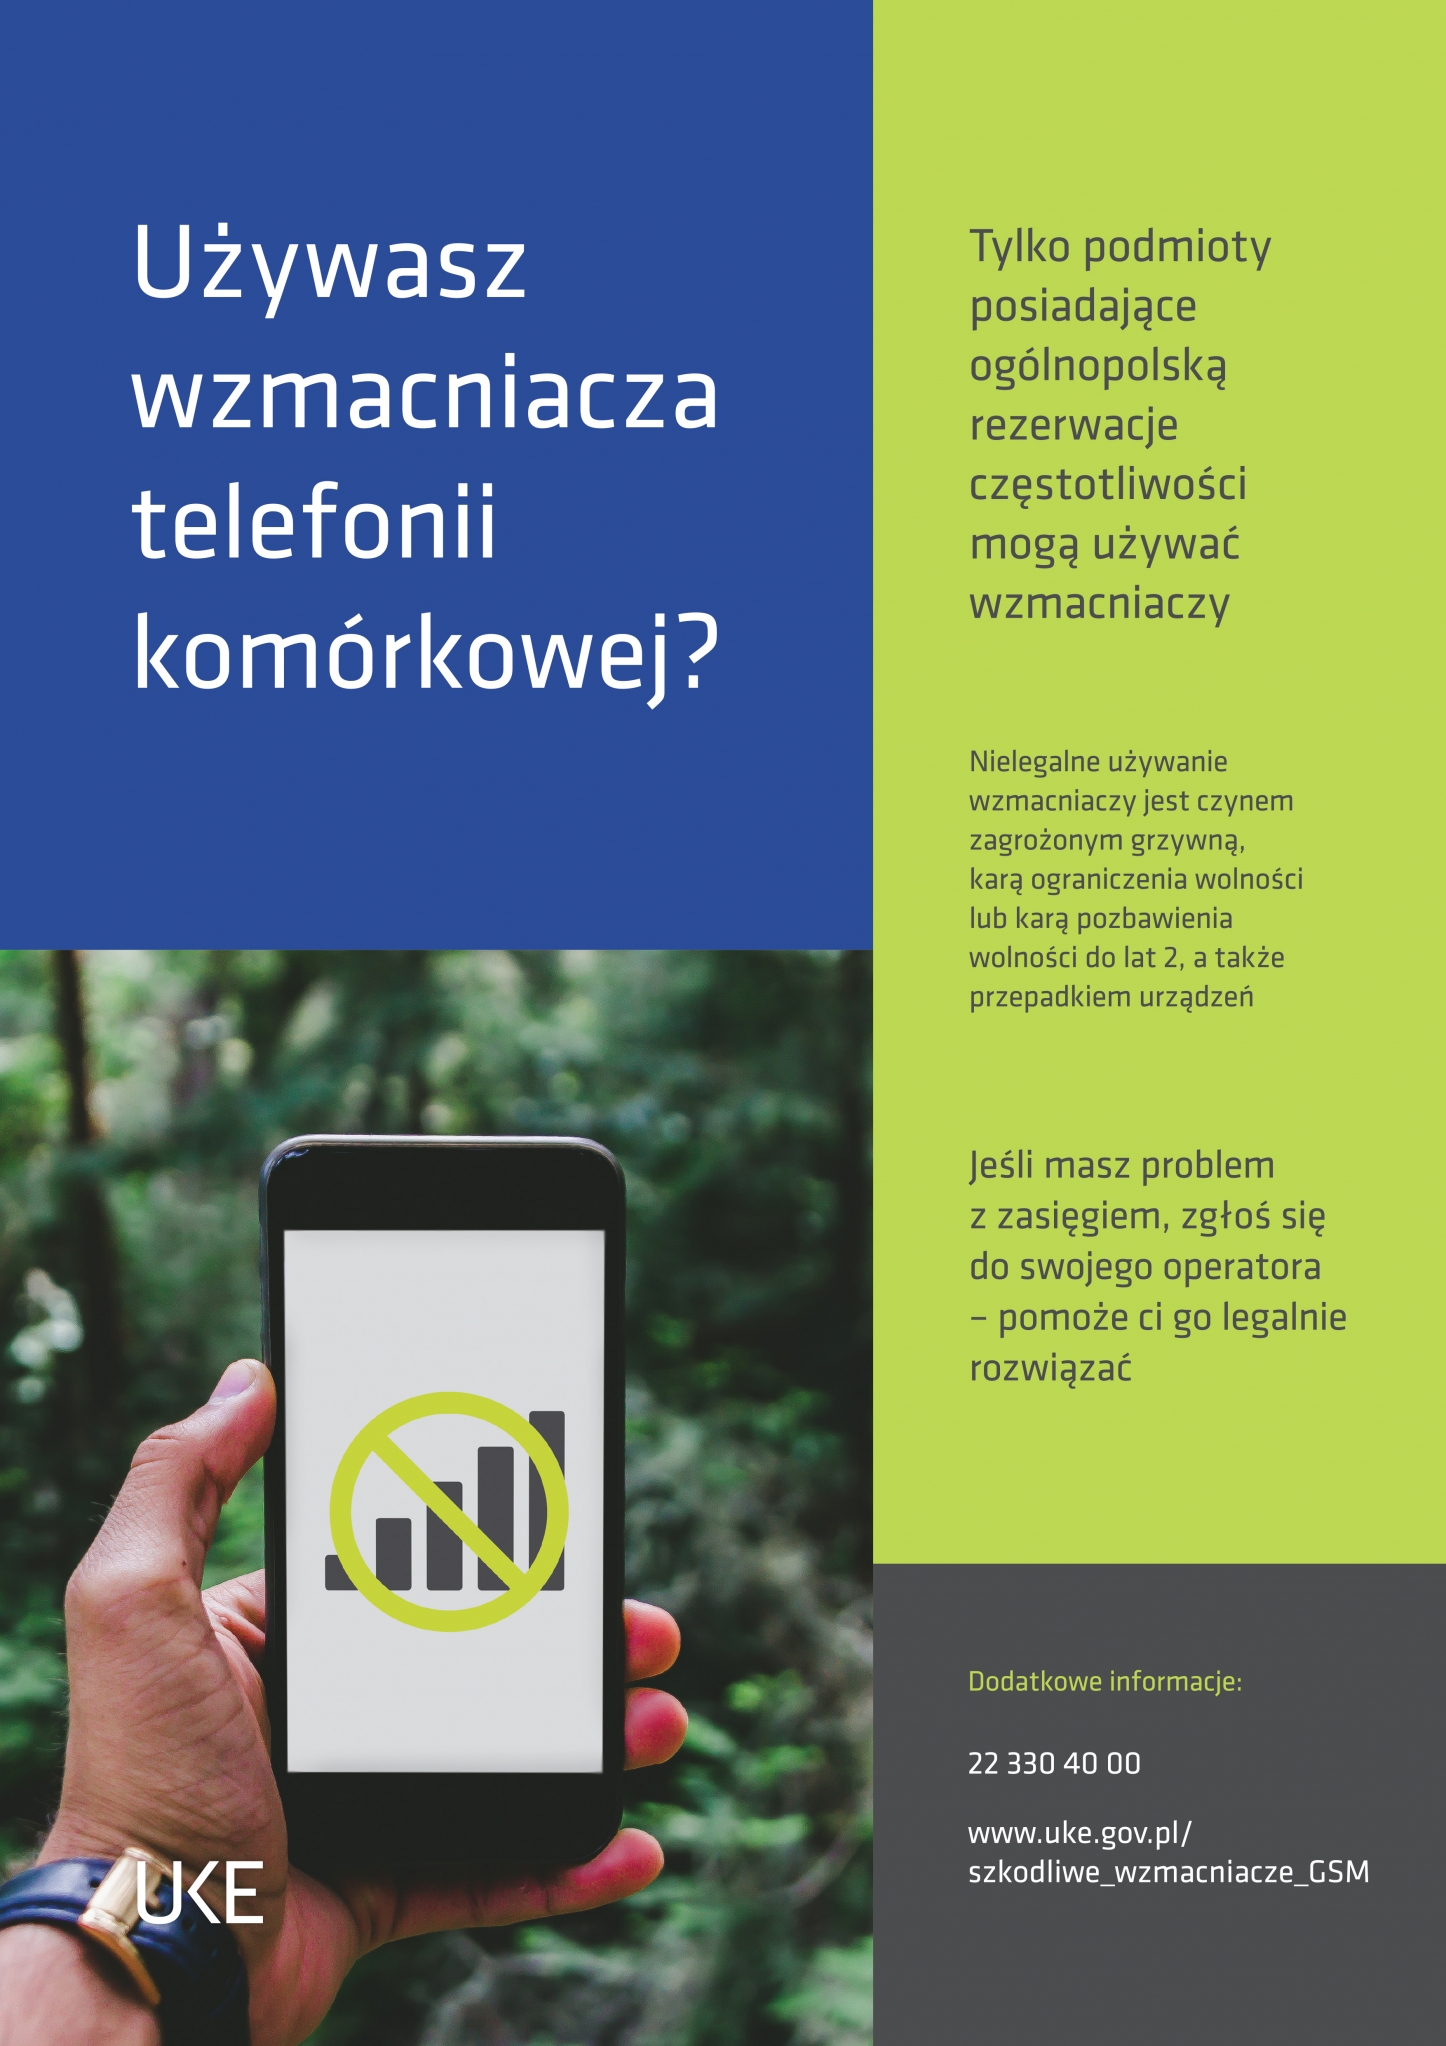 https://powiat.rzeszowski.pl/blog/2019/01/29/uzywasz-wzmacniacza-telefonii-komorkowej/plakat-uke-wzmacniacze-gsm-jpg/